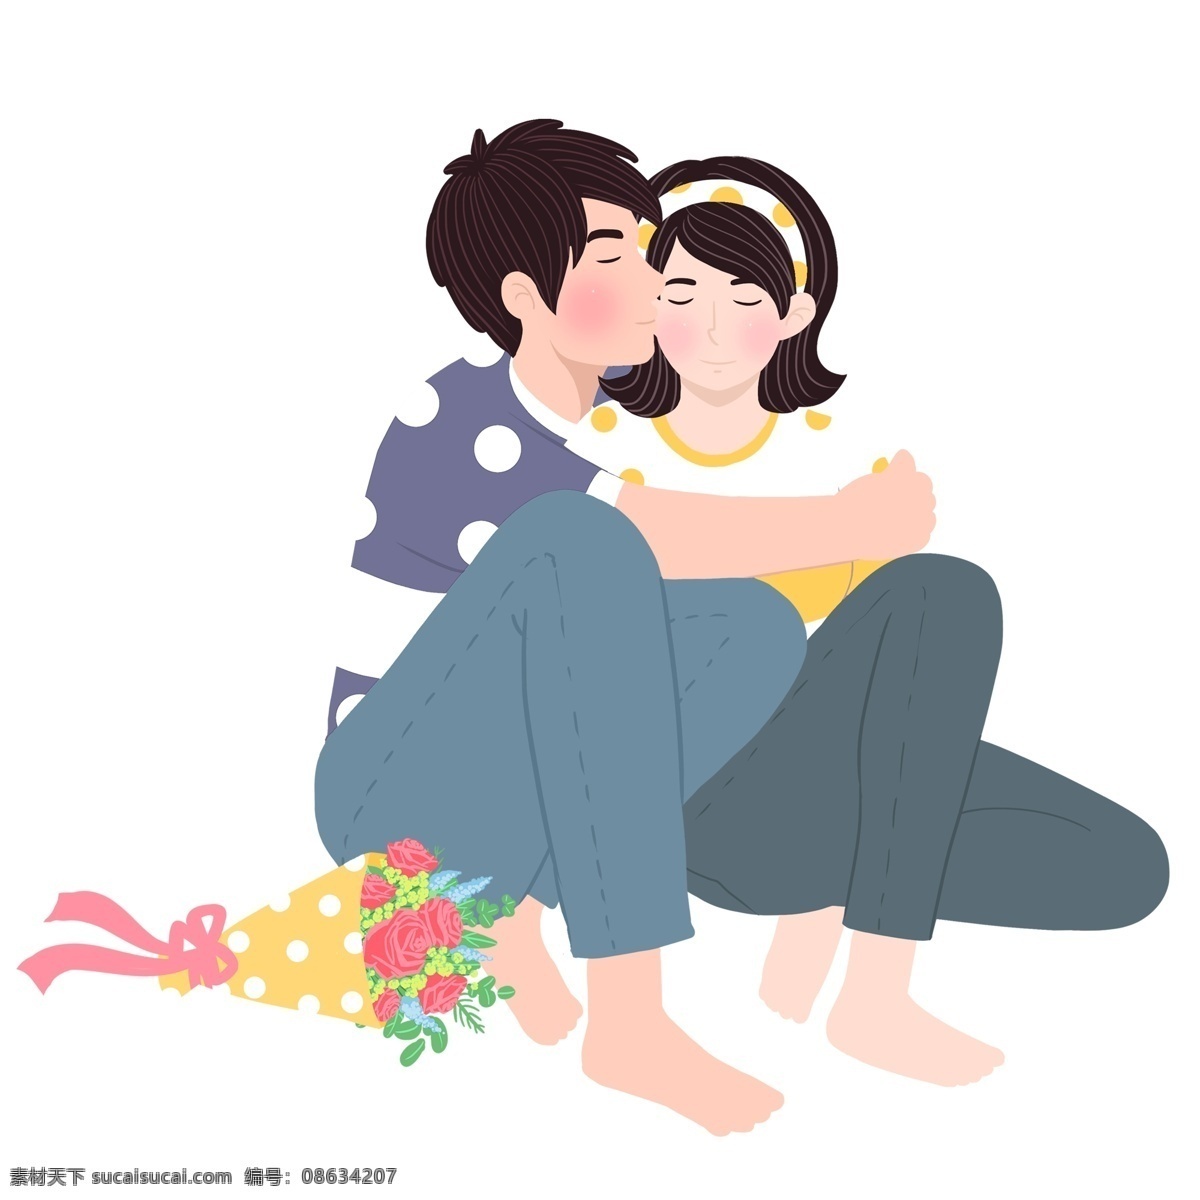 清新 手绘 情侣 接吻 场景 卡通 可爱 女孩 男孩 人物 520表白节 鲜花